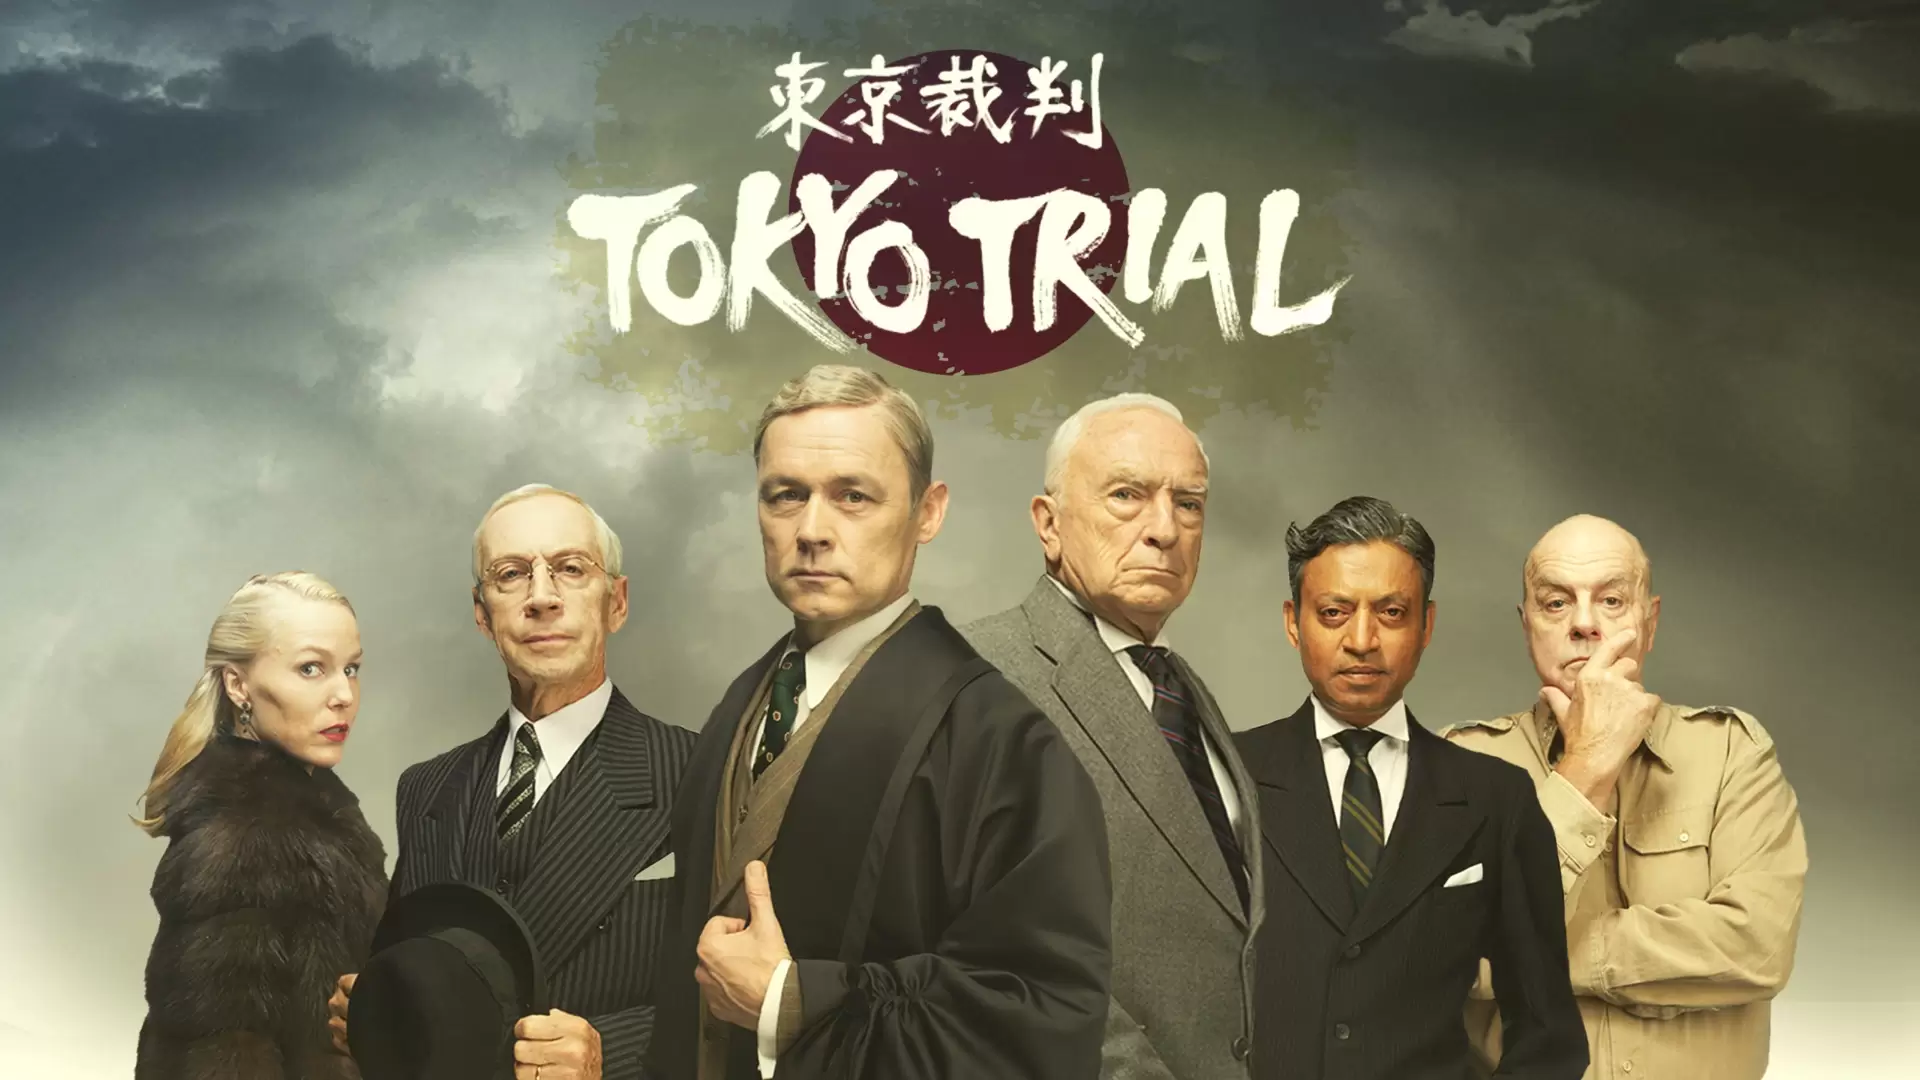 دانلود فیلم Tokyo Trial 2017